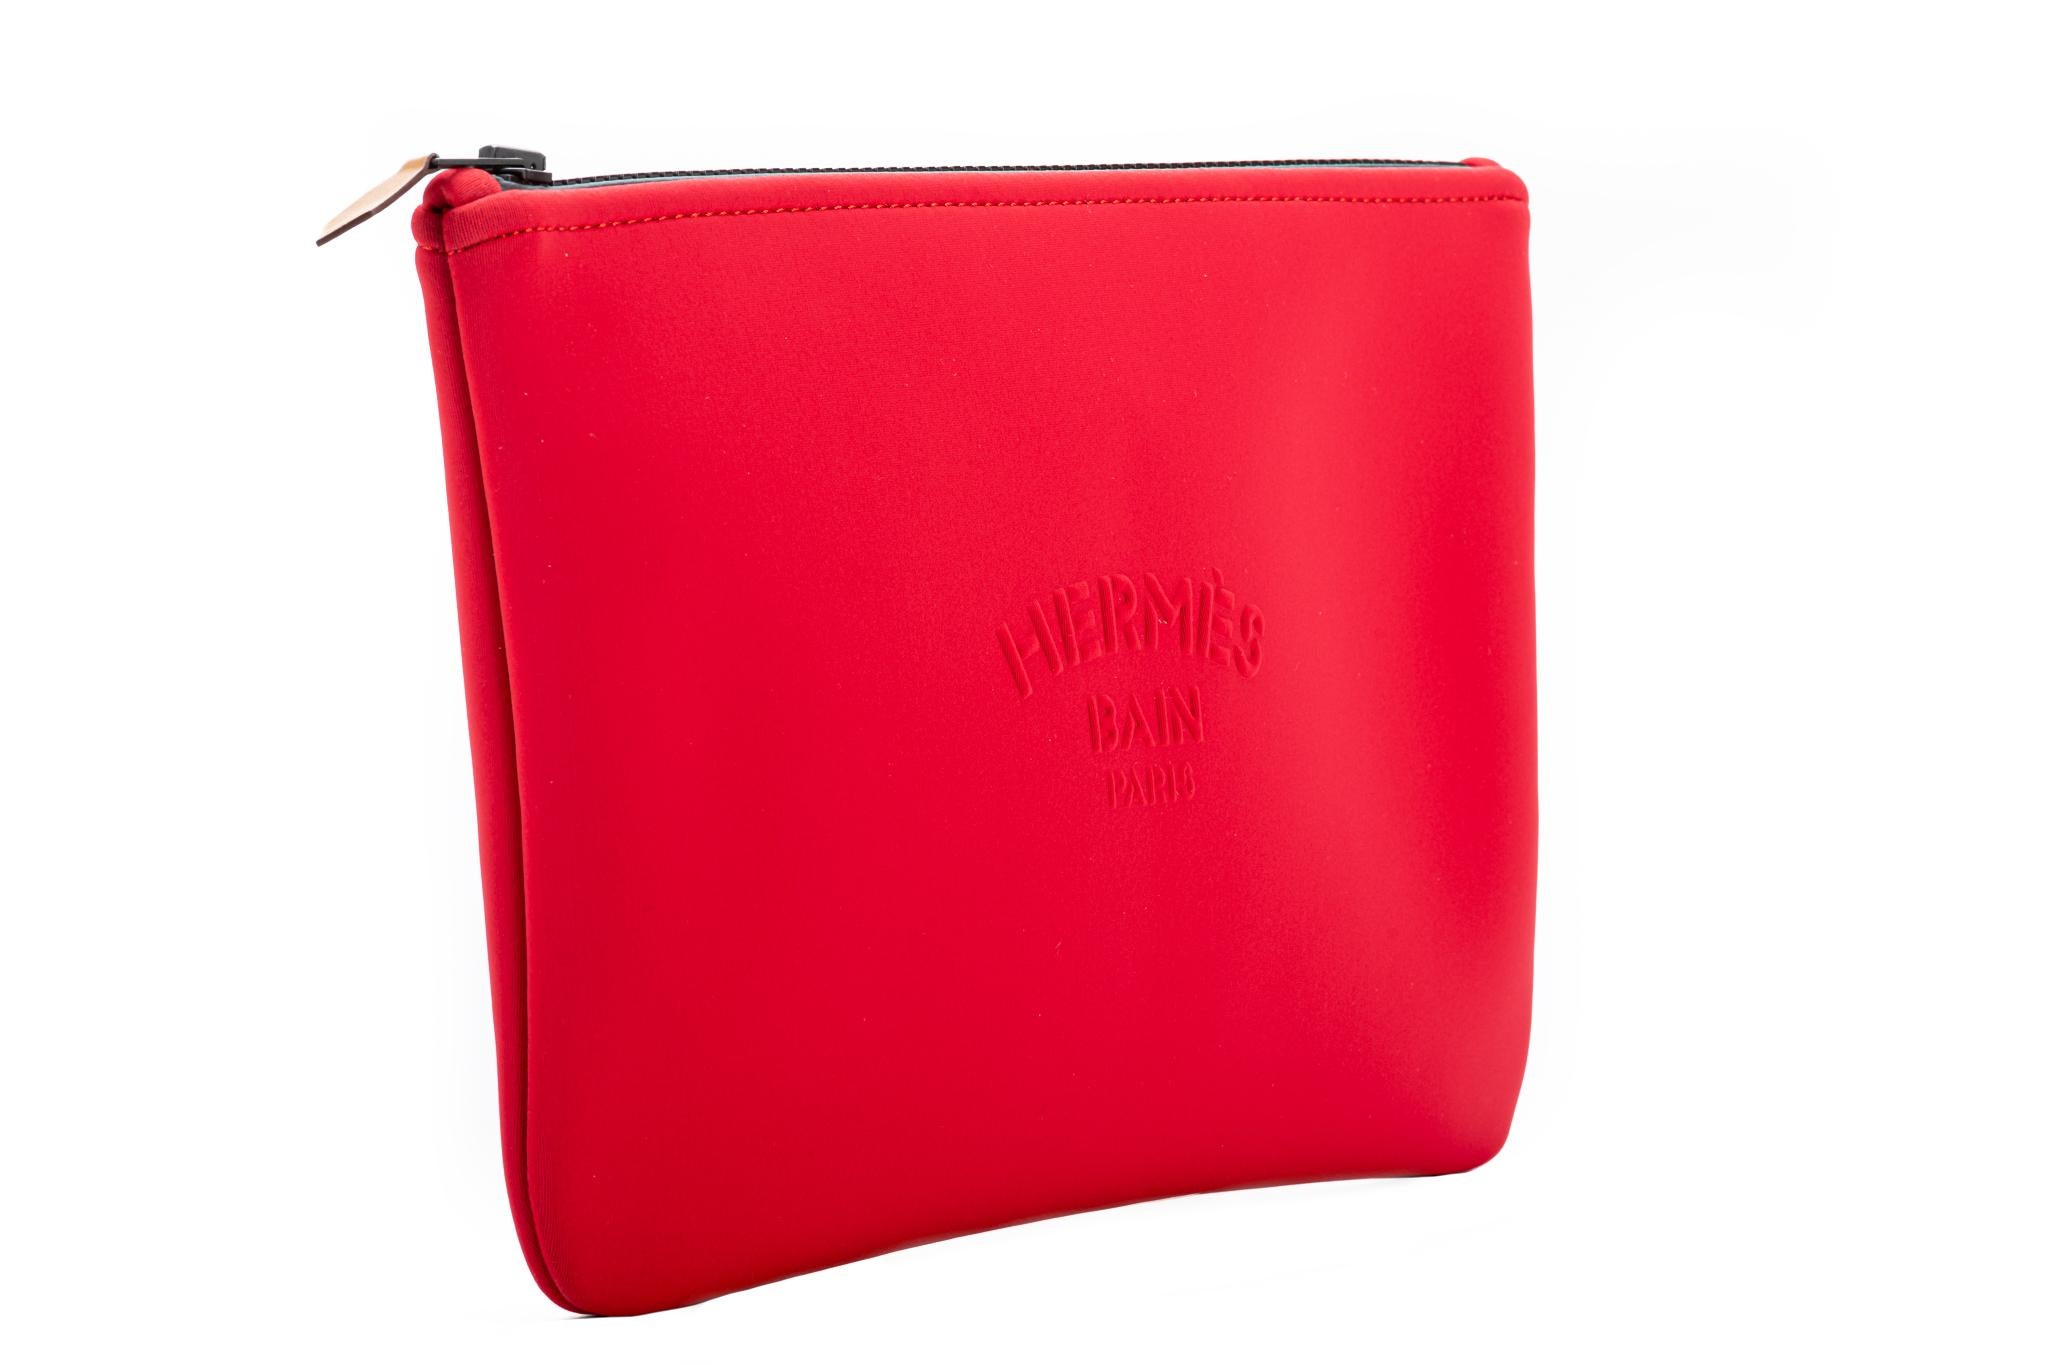 Hermès neue korallenrote Neopren Pochette/Toilette Tasche. kommt mit Hermes Einkaufstasche.